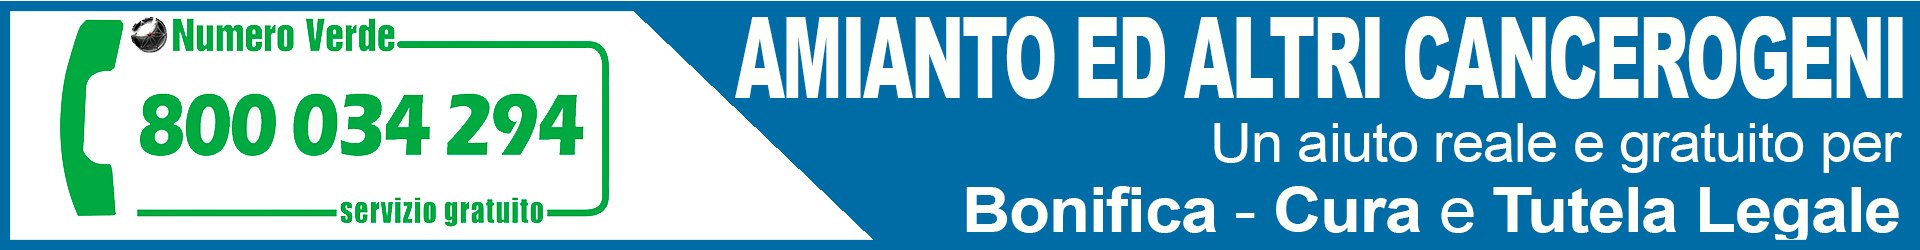 Osservatorio Nazionale Amianto Veneto